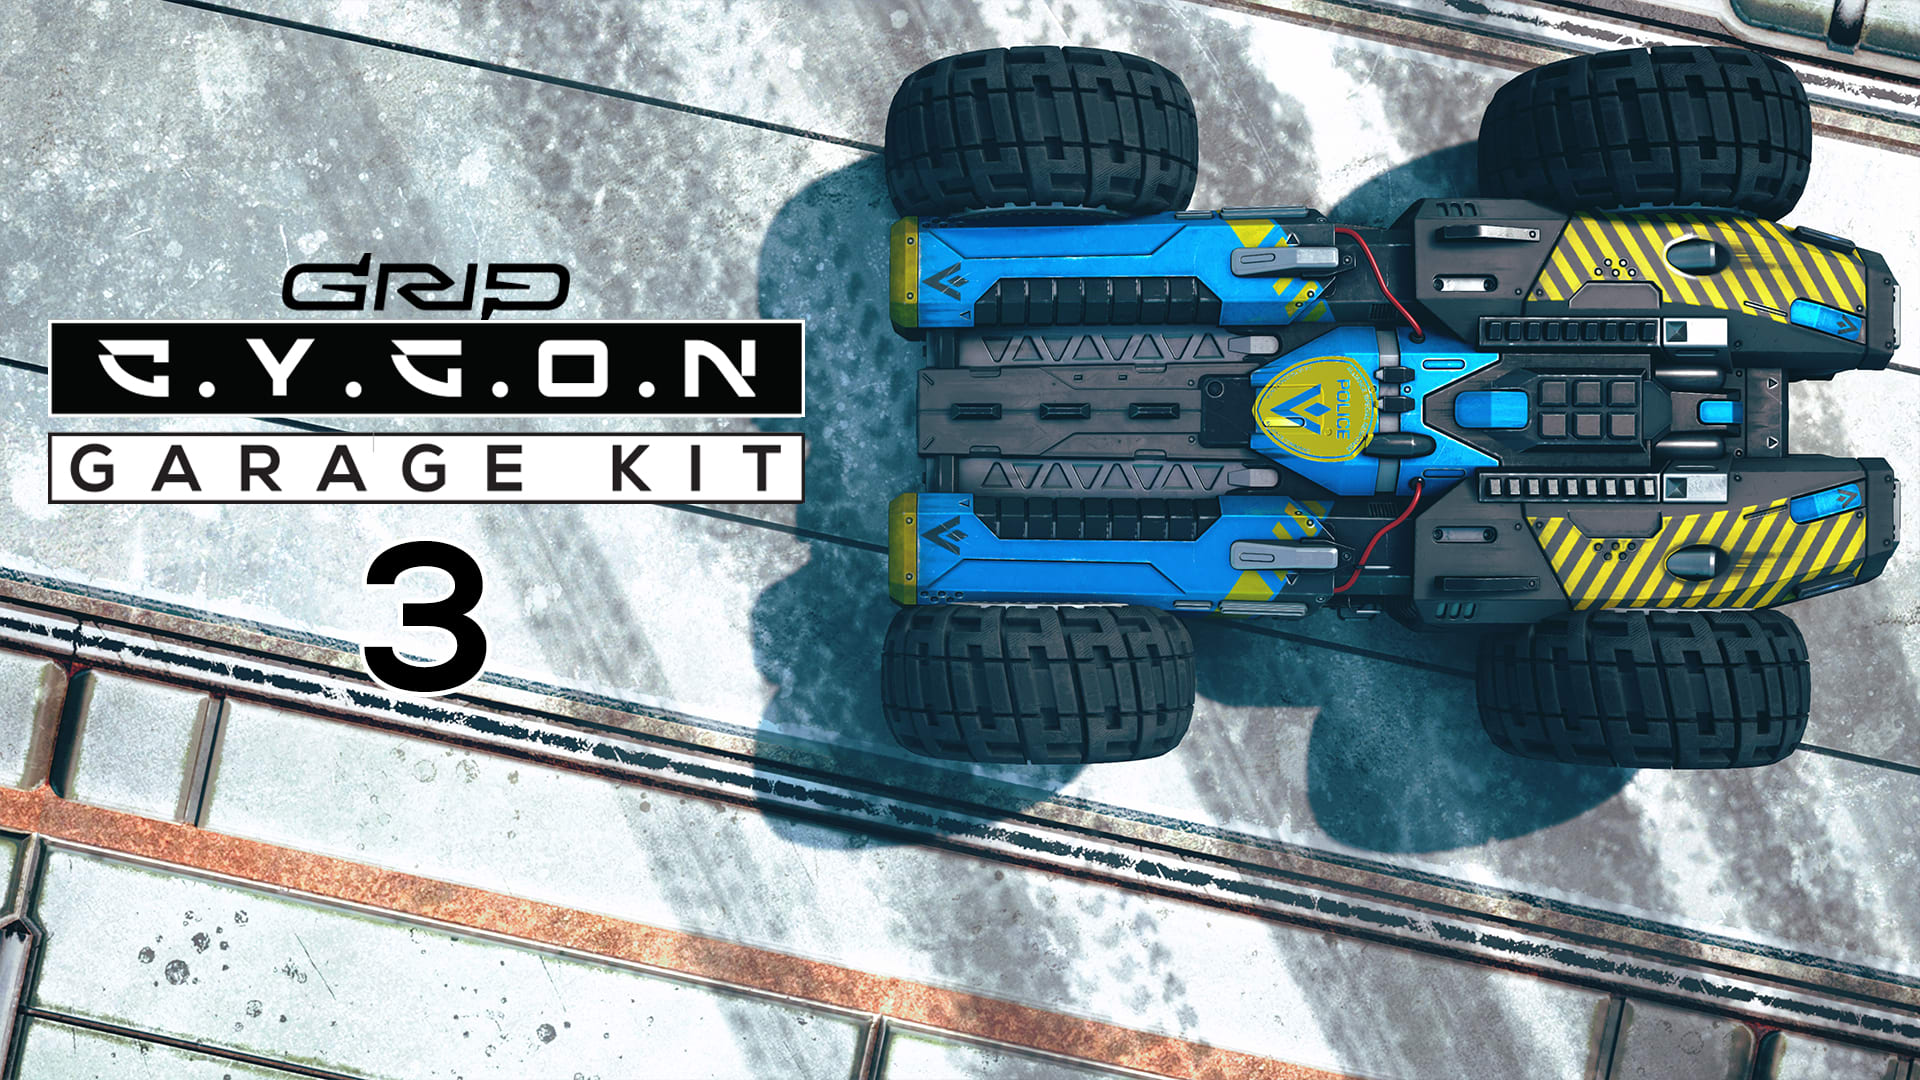 Cygon Garage Kit 3